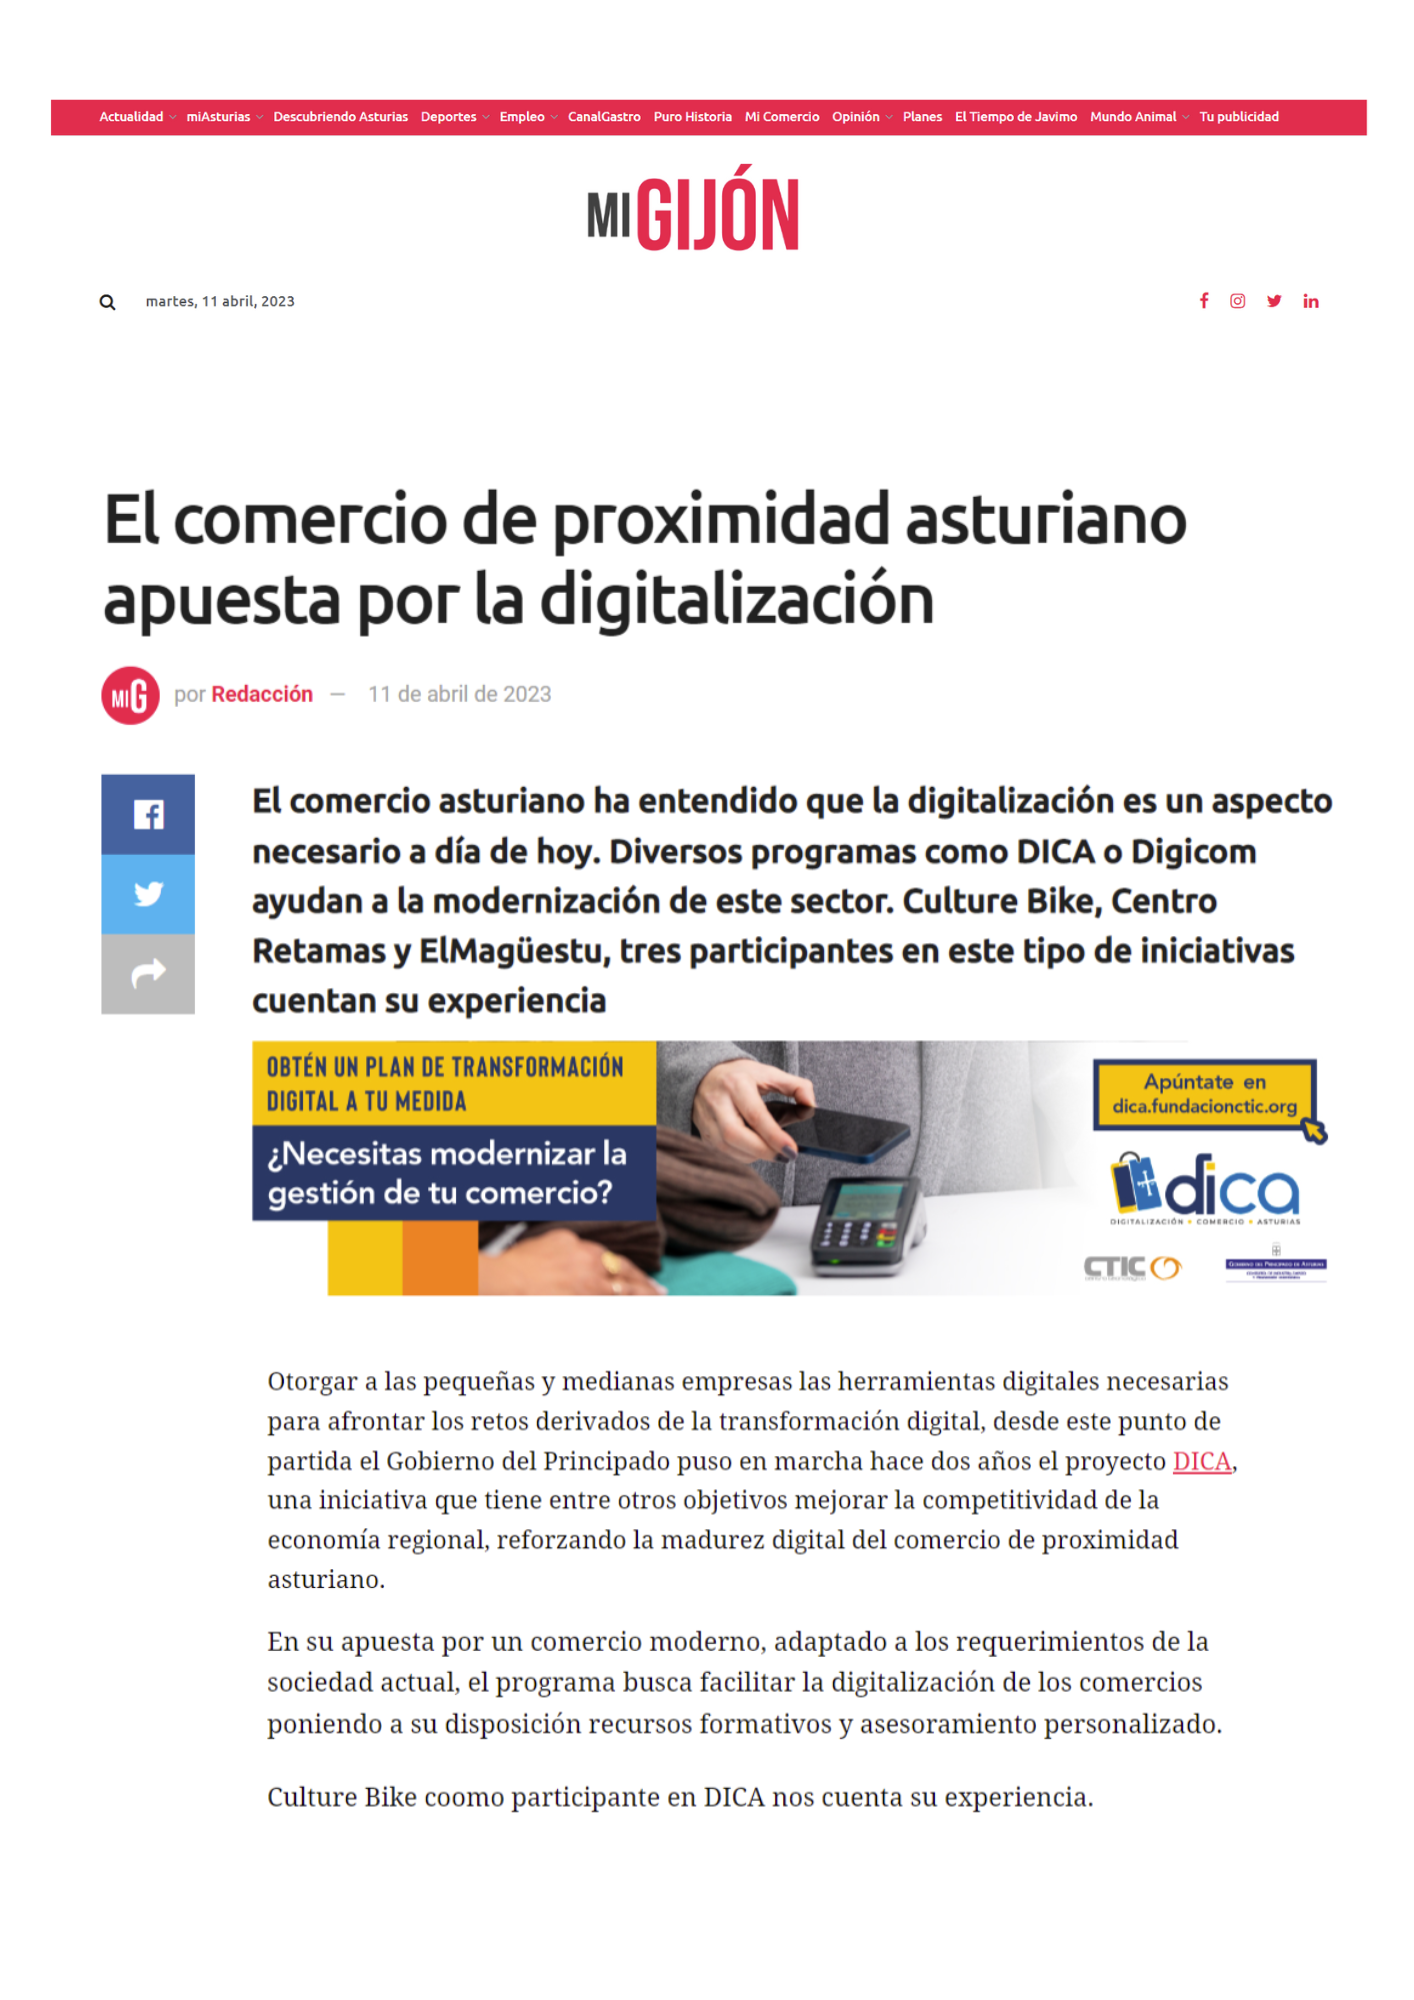 El comercio de proximidad asturiano apuesta por la digitalización